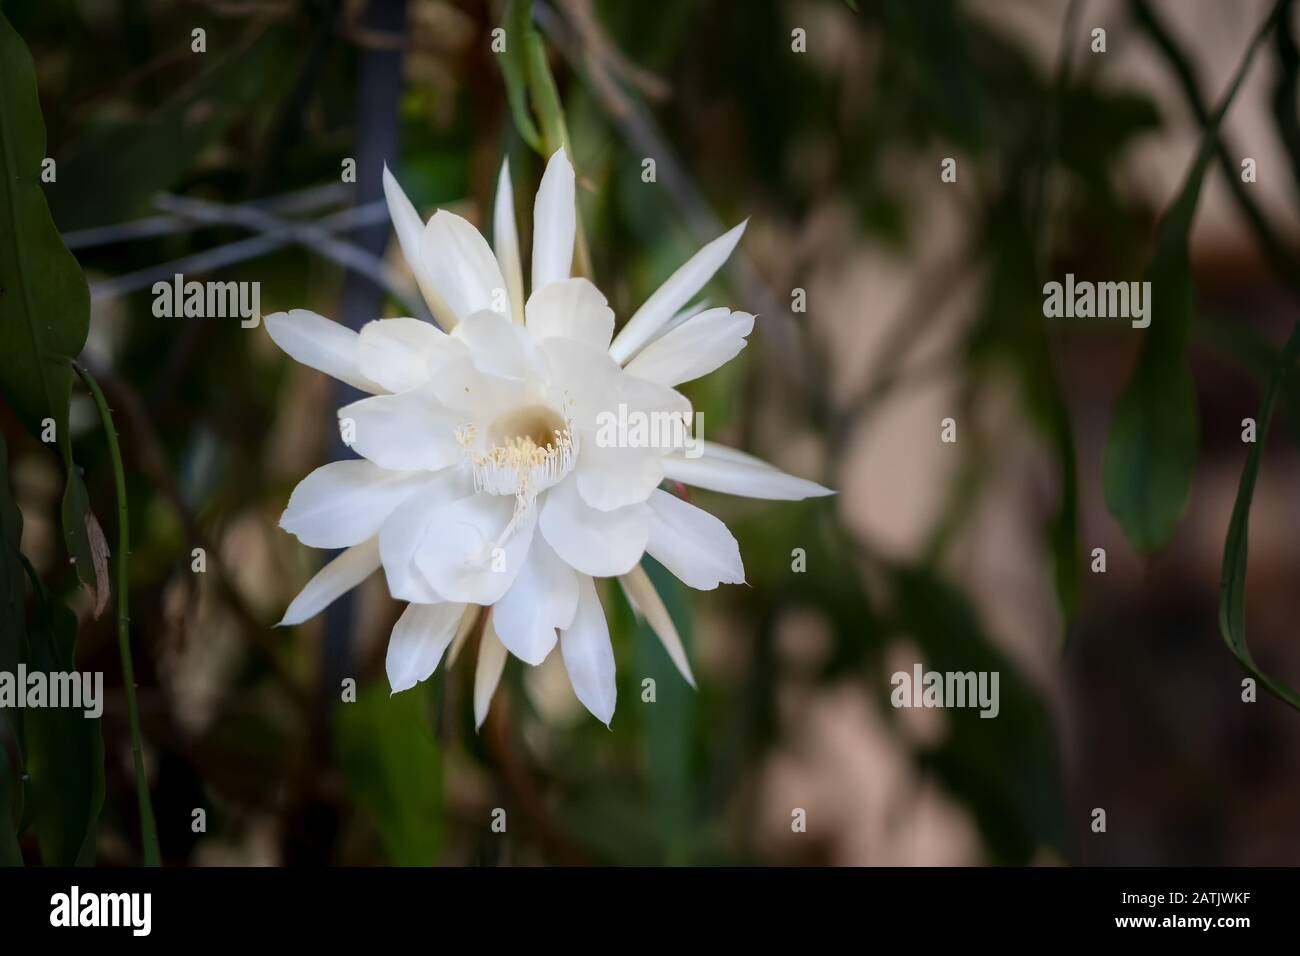 Vorderansicht einer weißen Blüte der Königin der Nacht (Epiphyllum oxypetalum) Kakteenpflanze, Nachtblüte, mit charmantem, betörend duftendem Llar Stockfoto